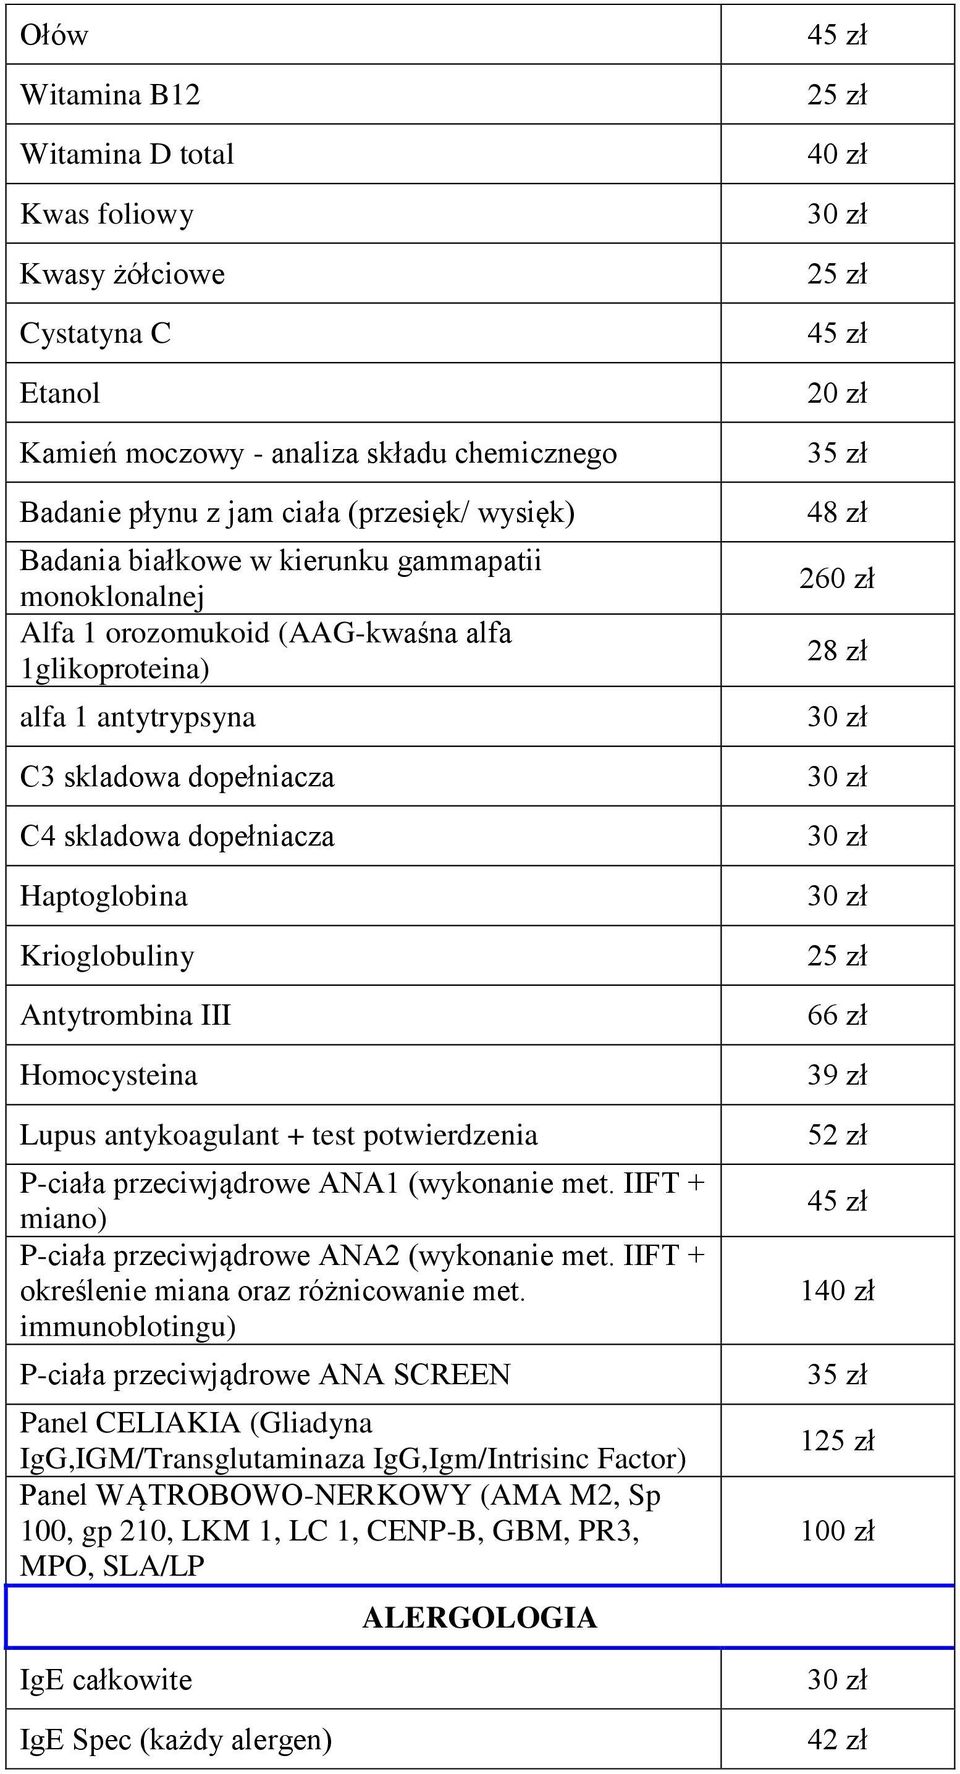 Homocysteina Lupus antykoagulant + test potwierdzenia P-ciała przeciwjądrowe ANA1 (wykonanie met. IIFT + miano) P-ciała przeciwjądrowe ANA2 (wykonanie met.